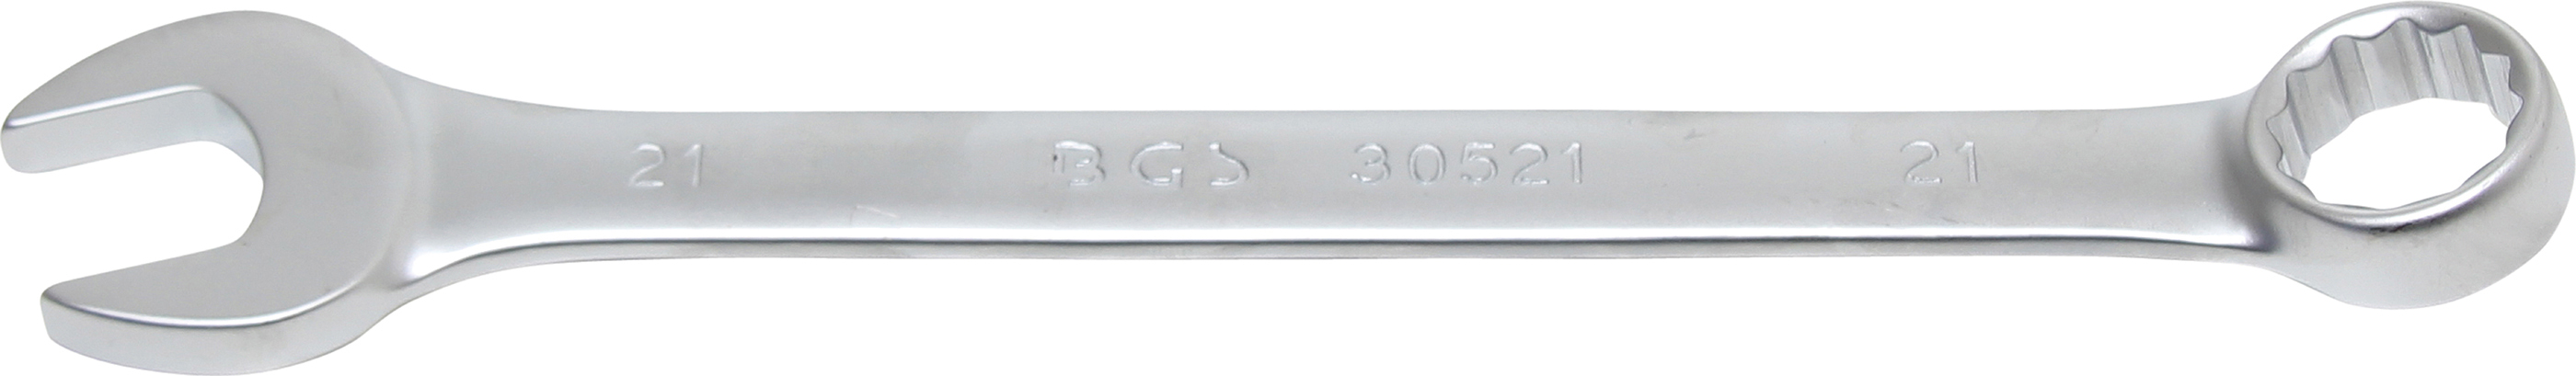 BGS 30521 Cheie combinata, 21 mm